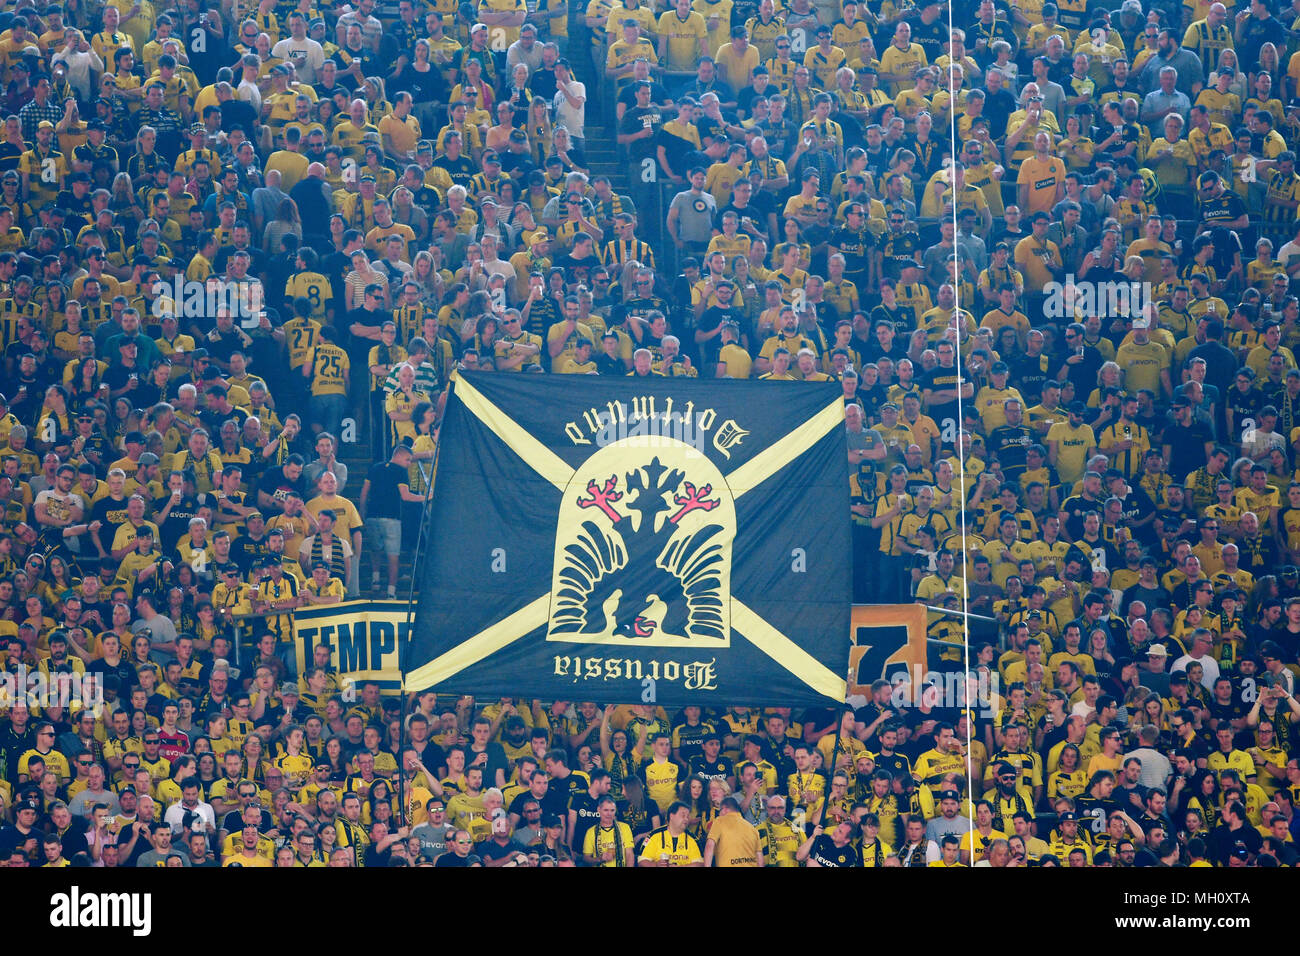 Signal-Iduna-Arena Dortmund Deutschland 21.4.2018, 1.Liga, Bundesliga Saison 2017/18 Spieltag 31, Borussia Dortmund (BVB) vs Bayer 04 Leverkusen------- Dortmund Unterstützer präsentieren ein club Flagge auf den Kopf, ihre Unzufriedenheit zum Ausdruck zu bringen Stockfoto